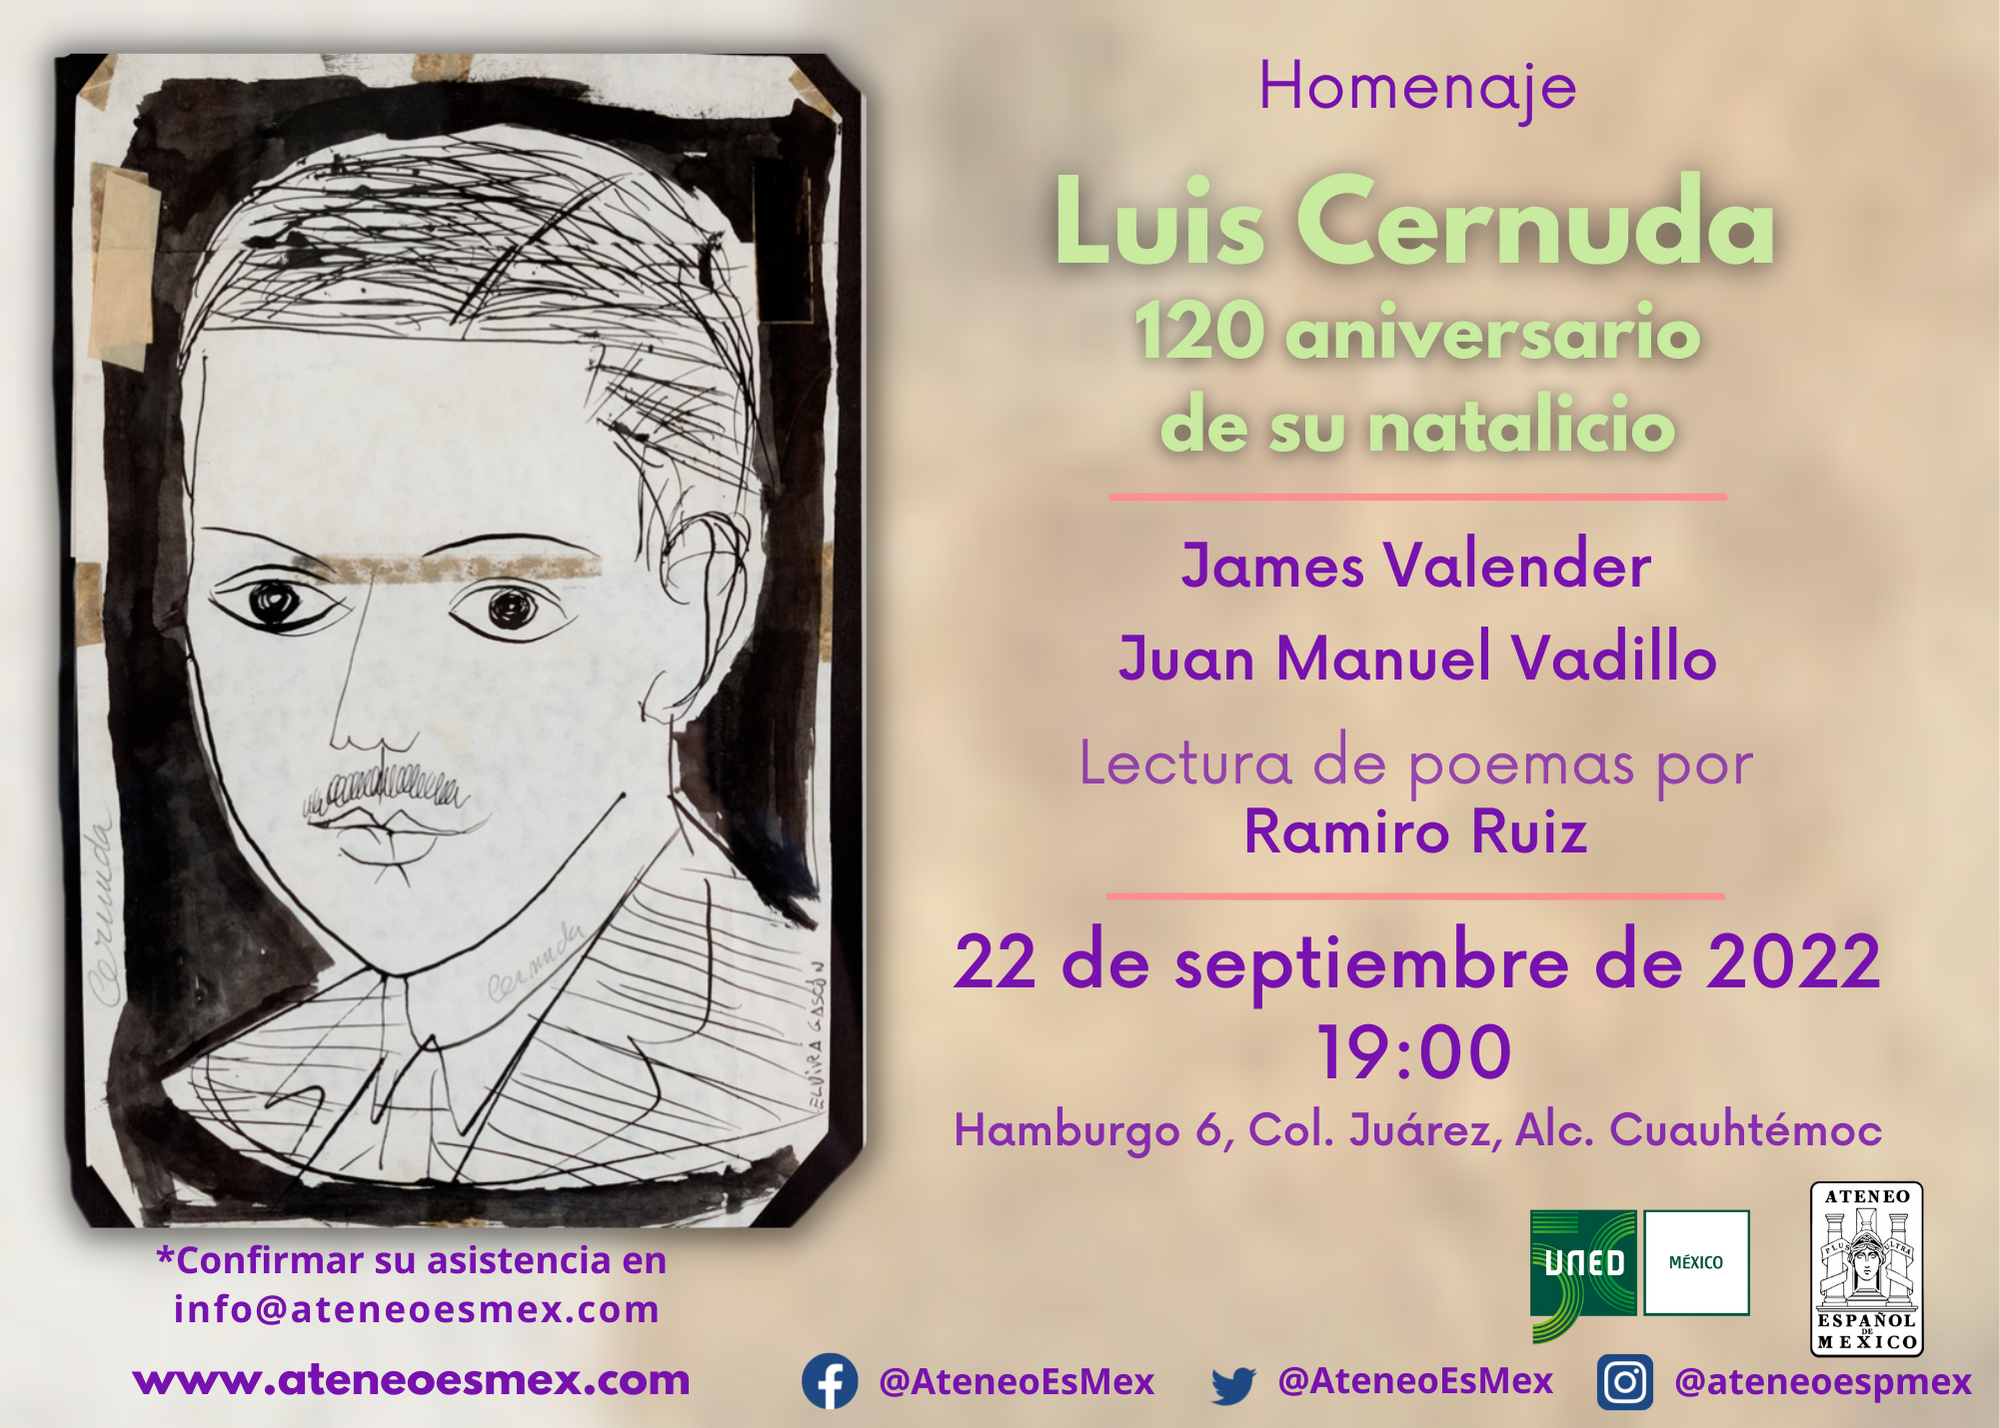 Homenaje a Luis Cernuda. 120 aniversario de su natalicio